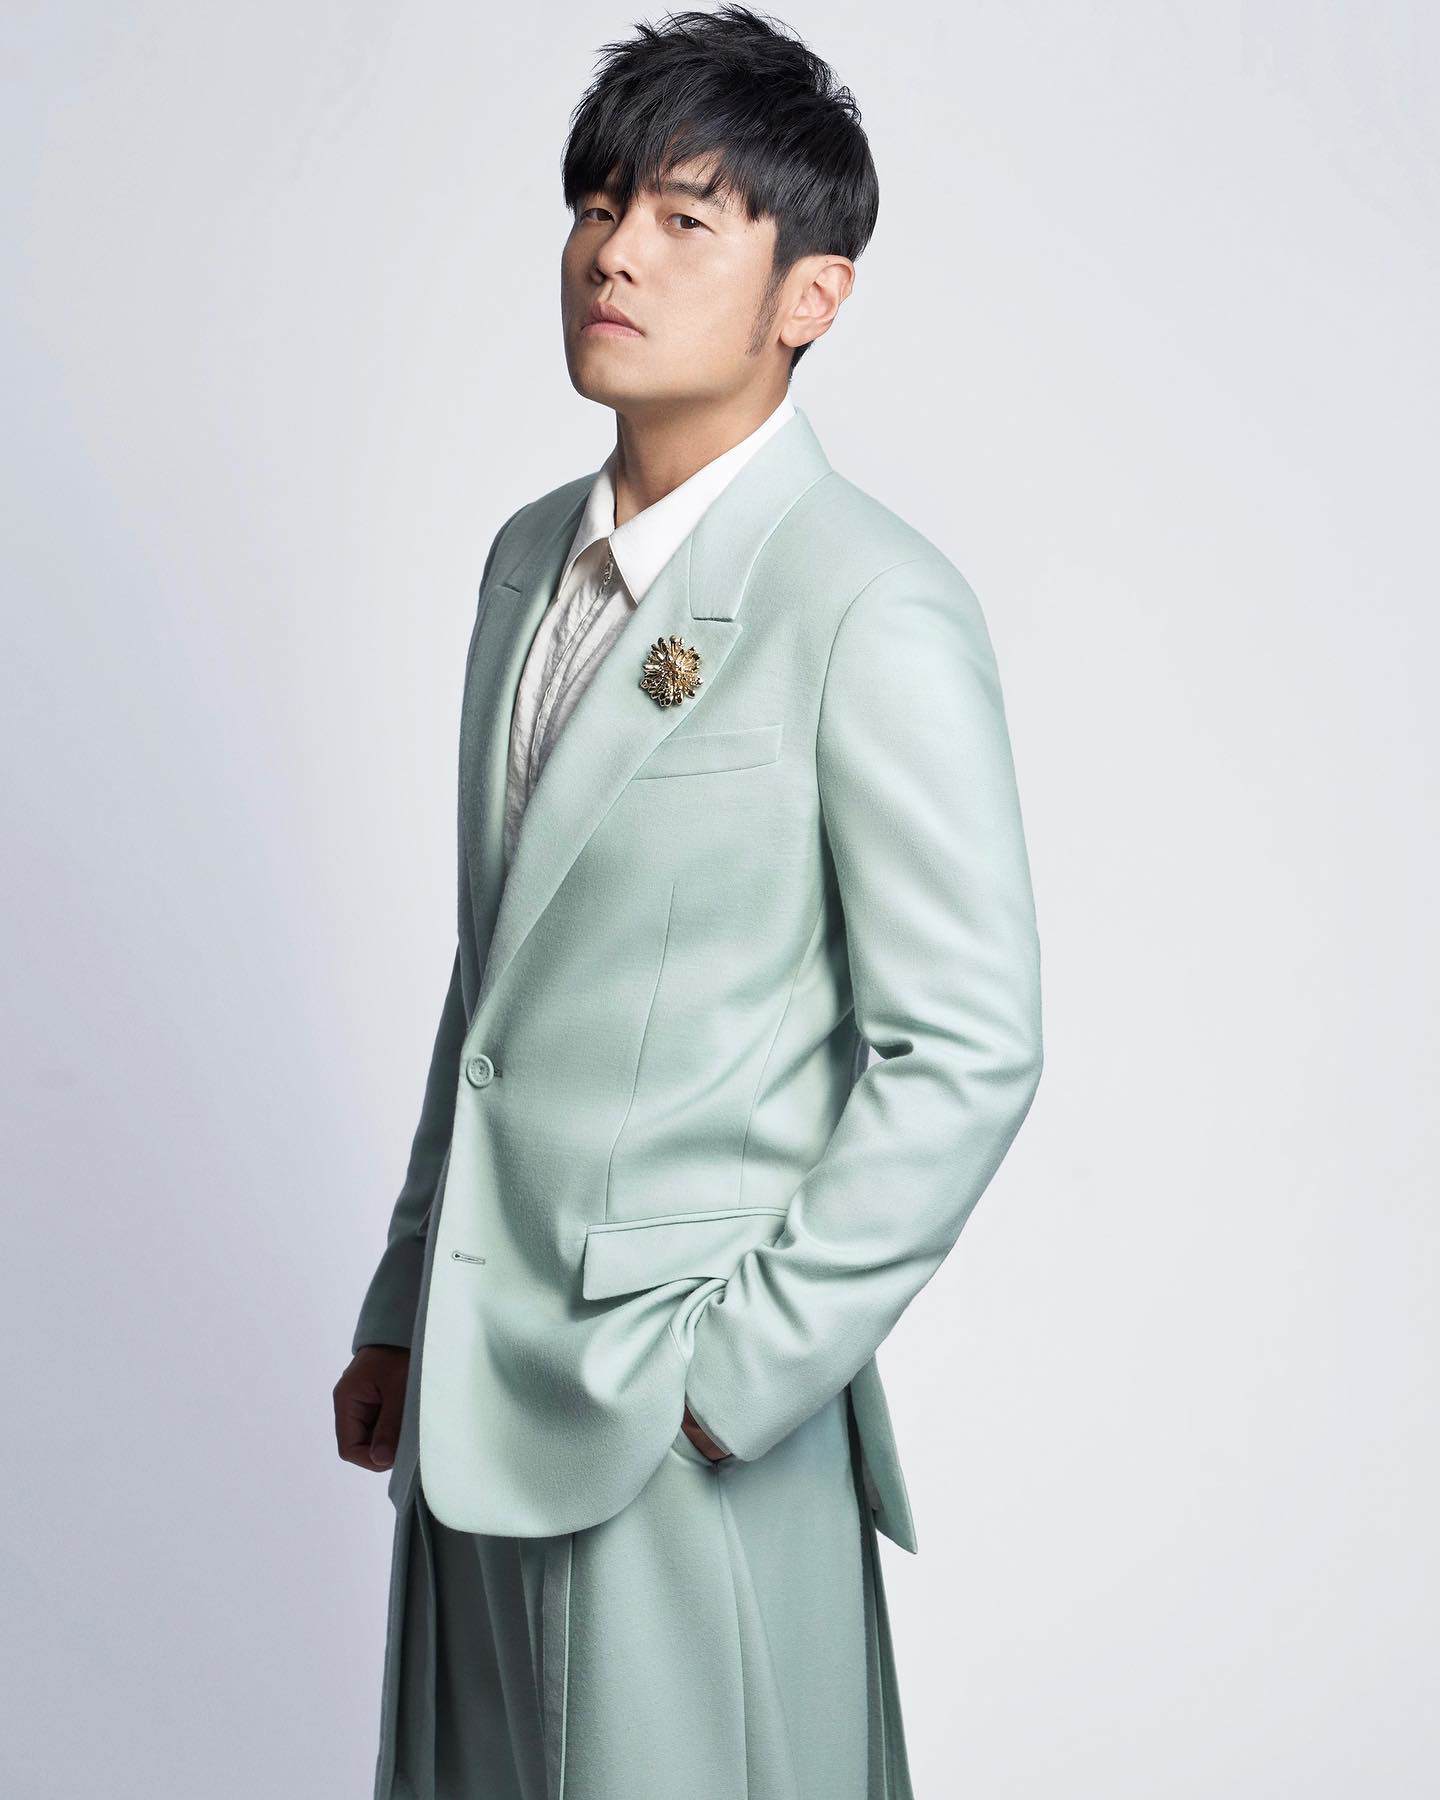 Châu Kiệt Luân làm Đại sứ trang phục nam mới nhất của Dior - 1